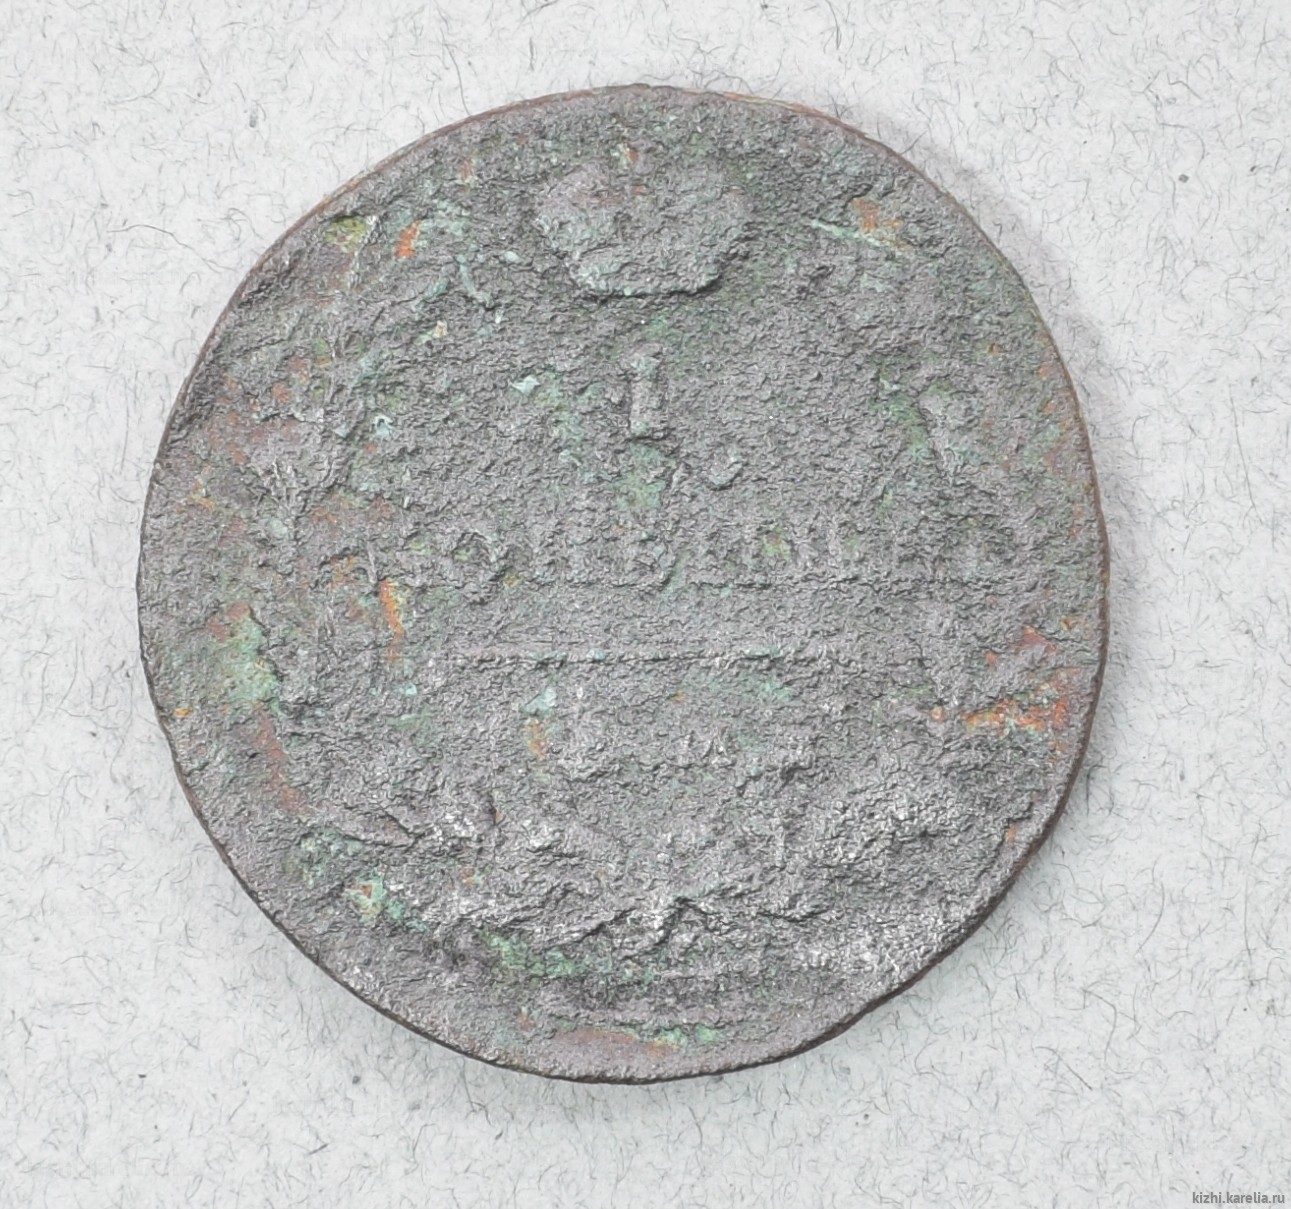 Монета. 1 копѣйка. 1819 г.